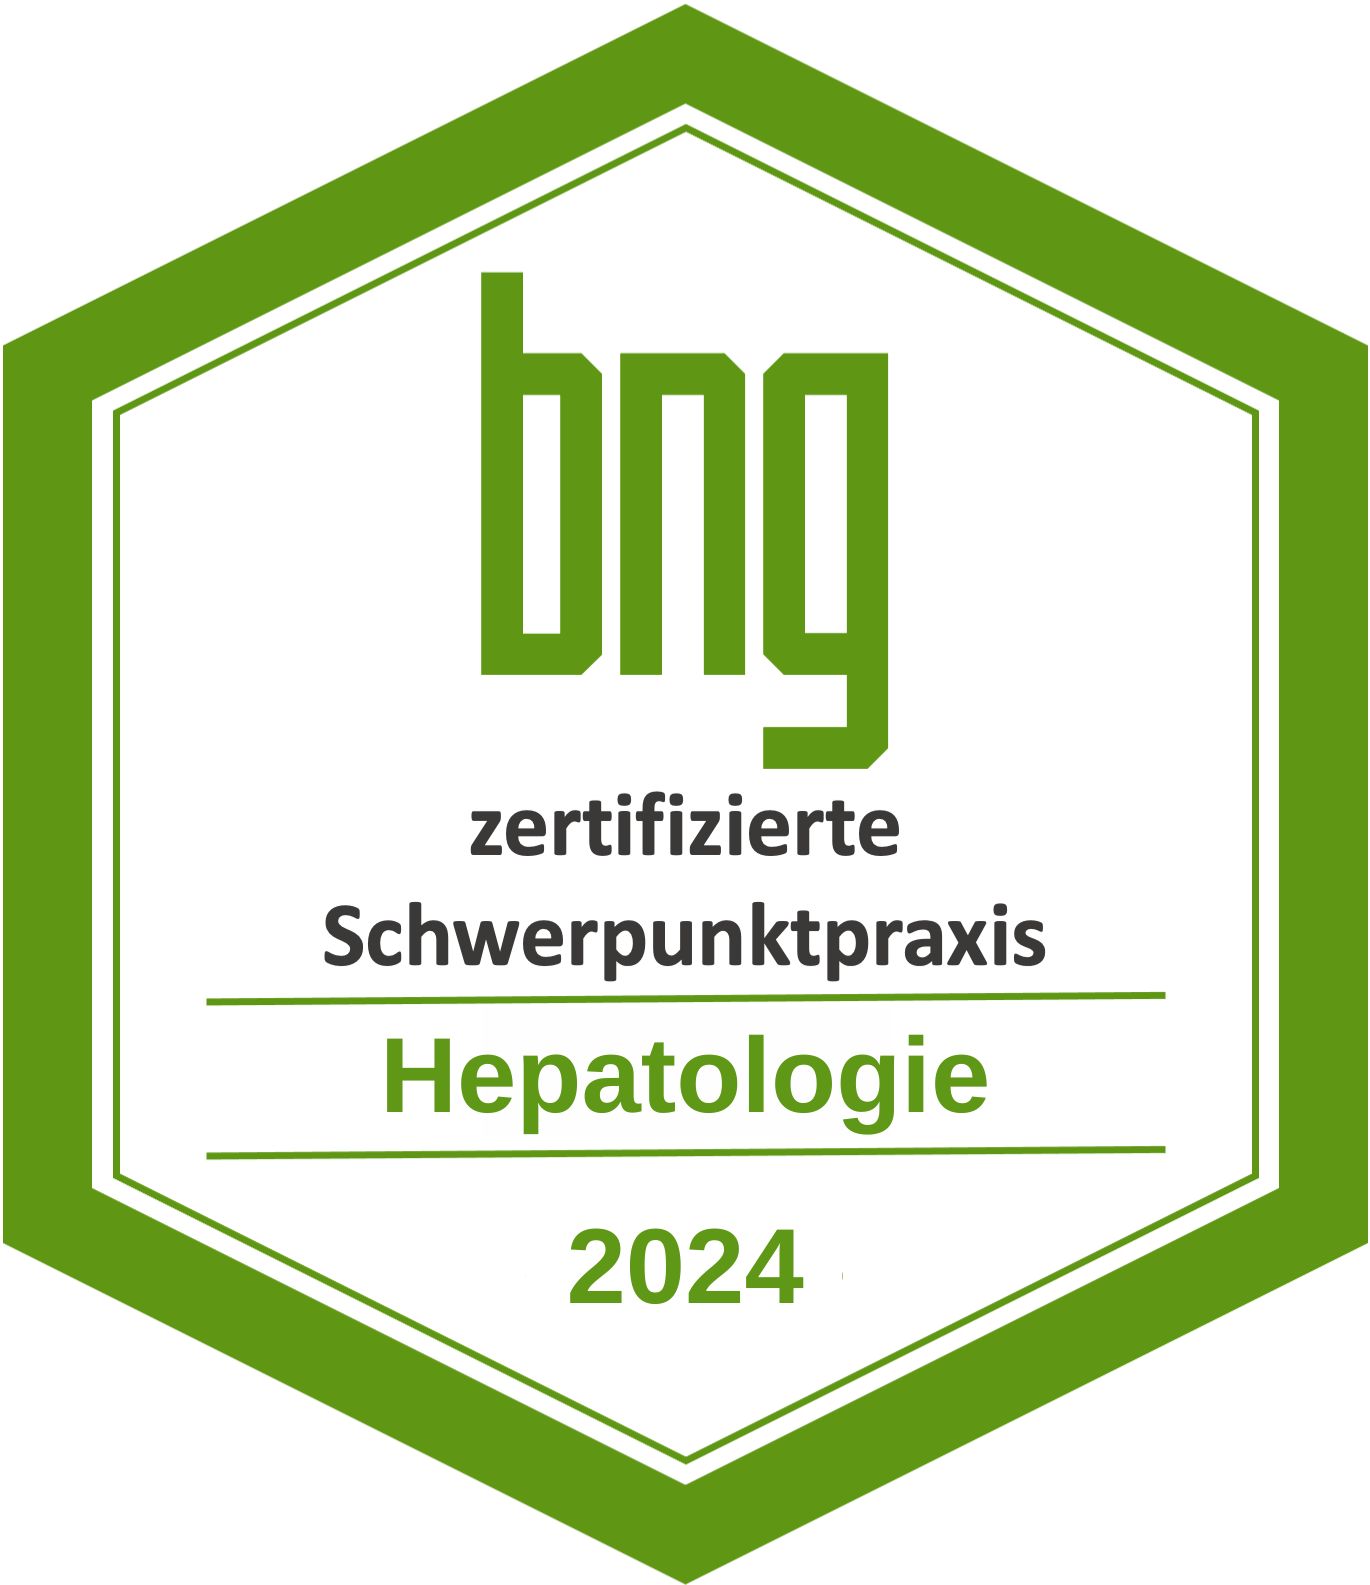 2024 Hepatologie.jpg